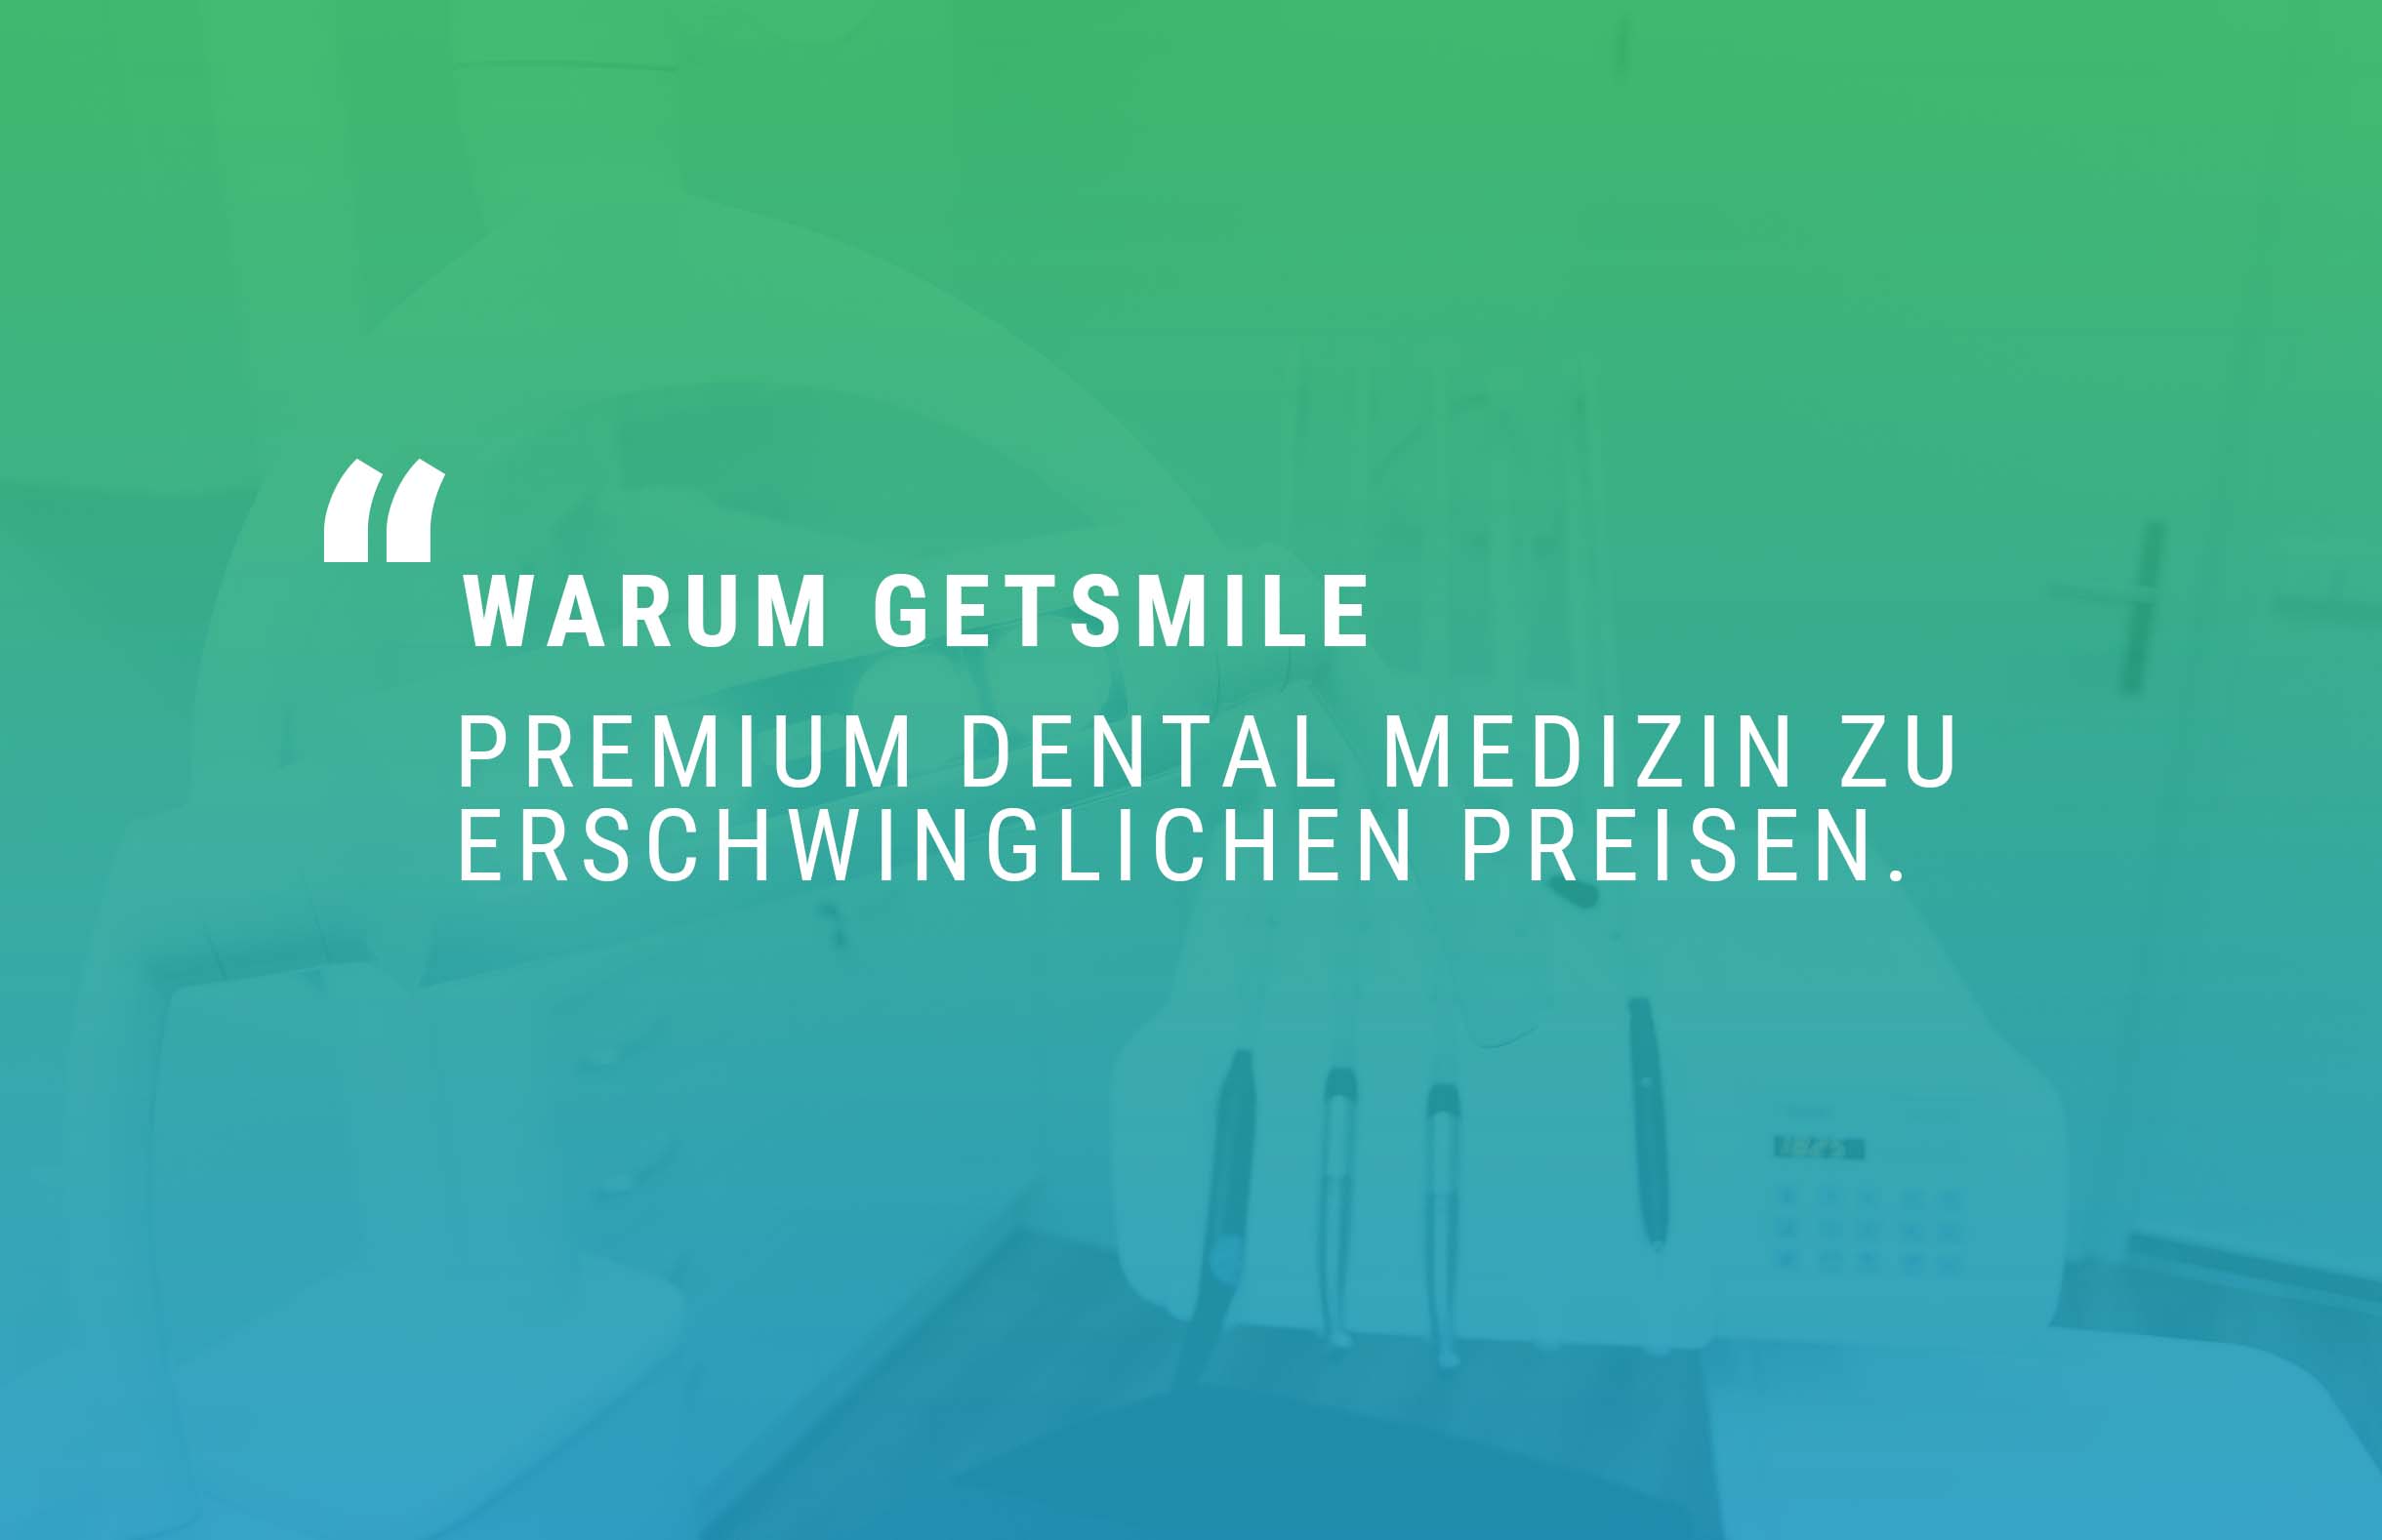 Premium Dental Medizin Zu Erschwinglichen preisen